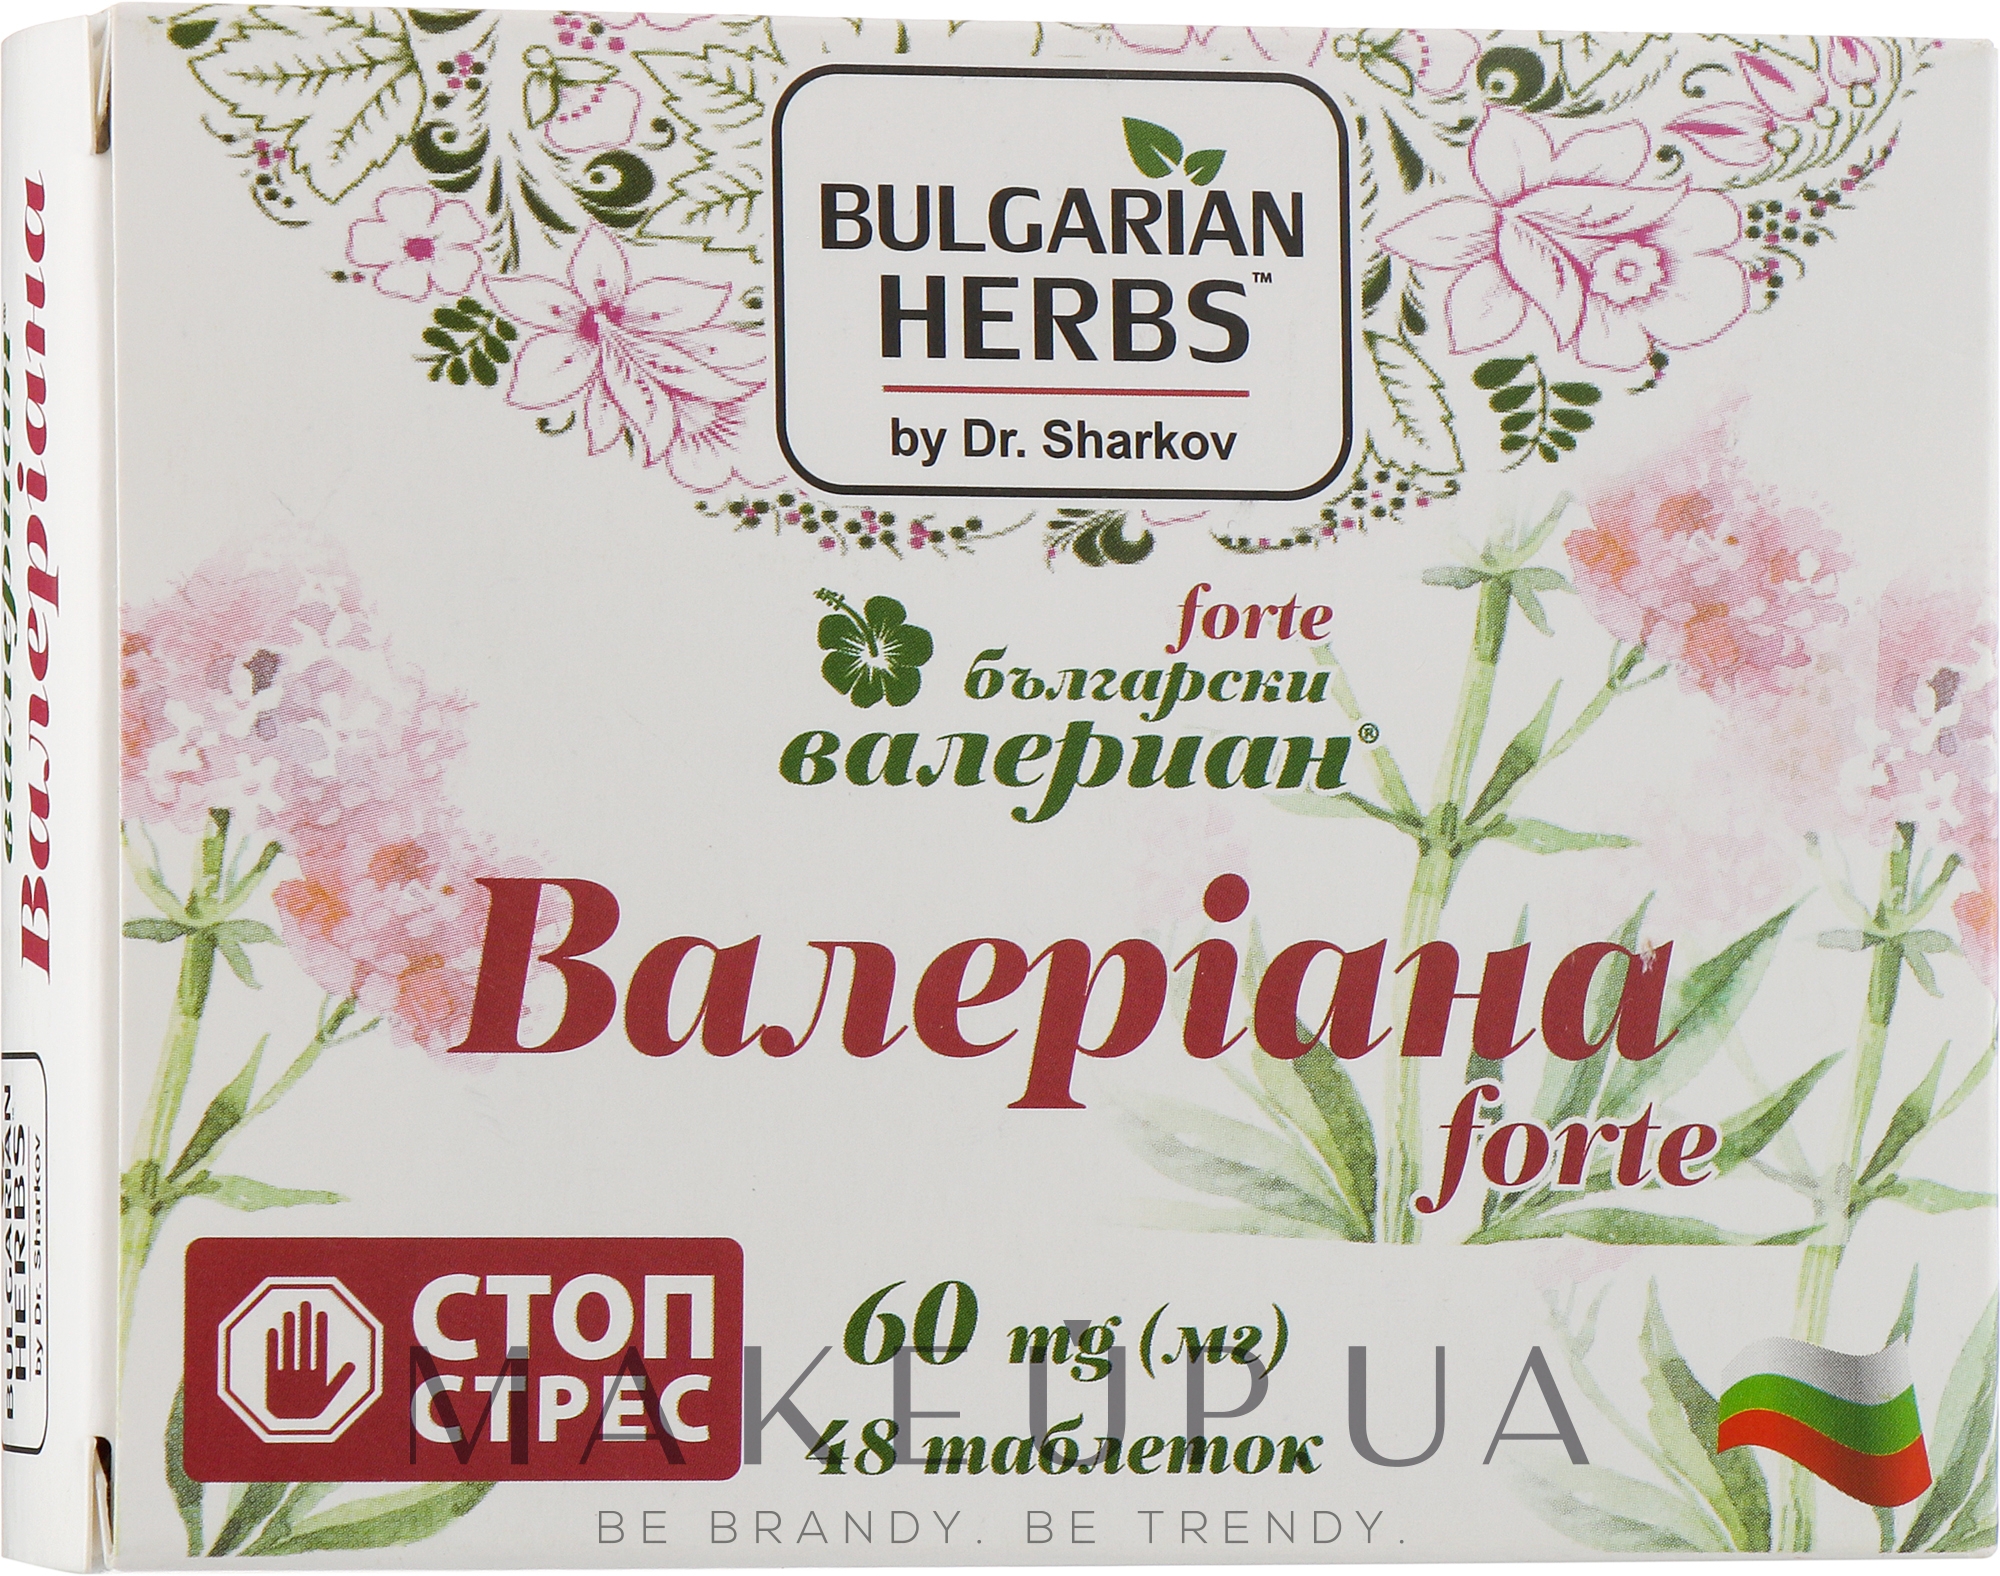 Заспокійливий засіб "Болгарська валеріана Forte", 60 мг - Bulgarian Herbs — фото 48шт